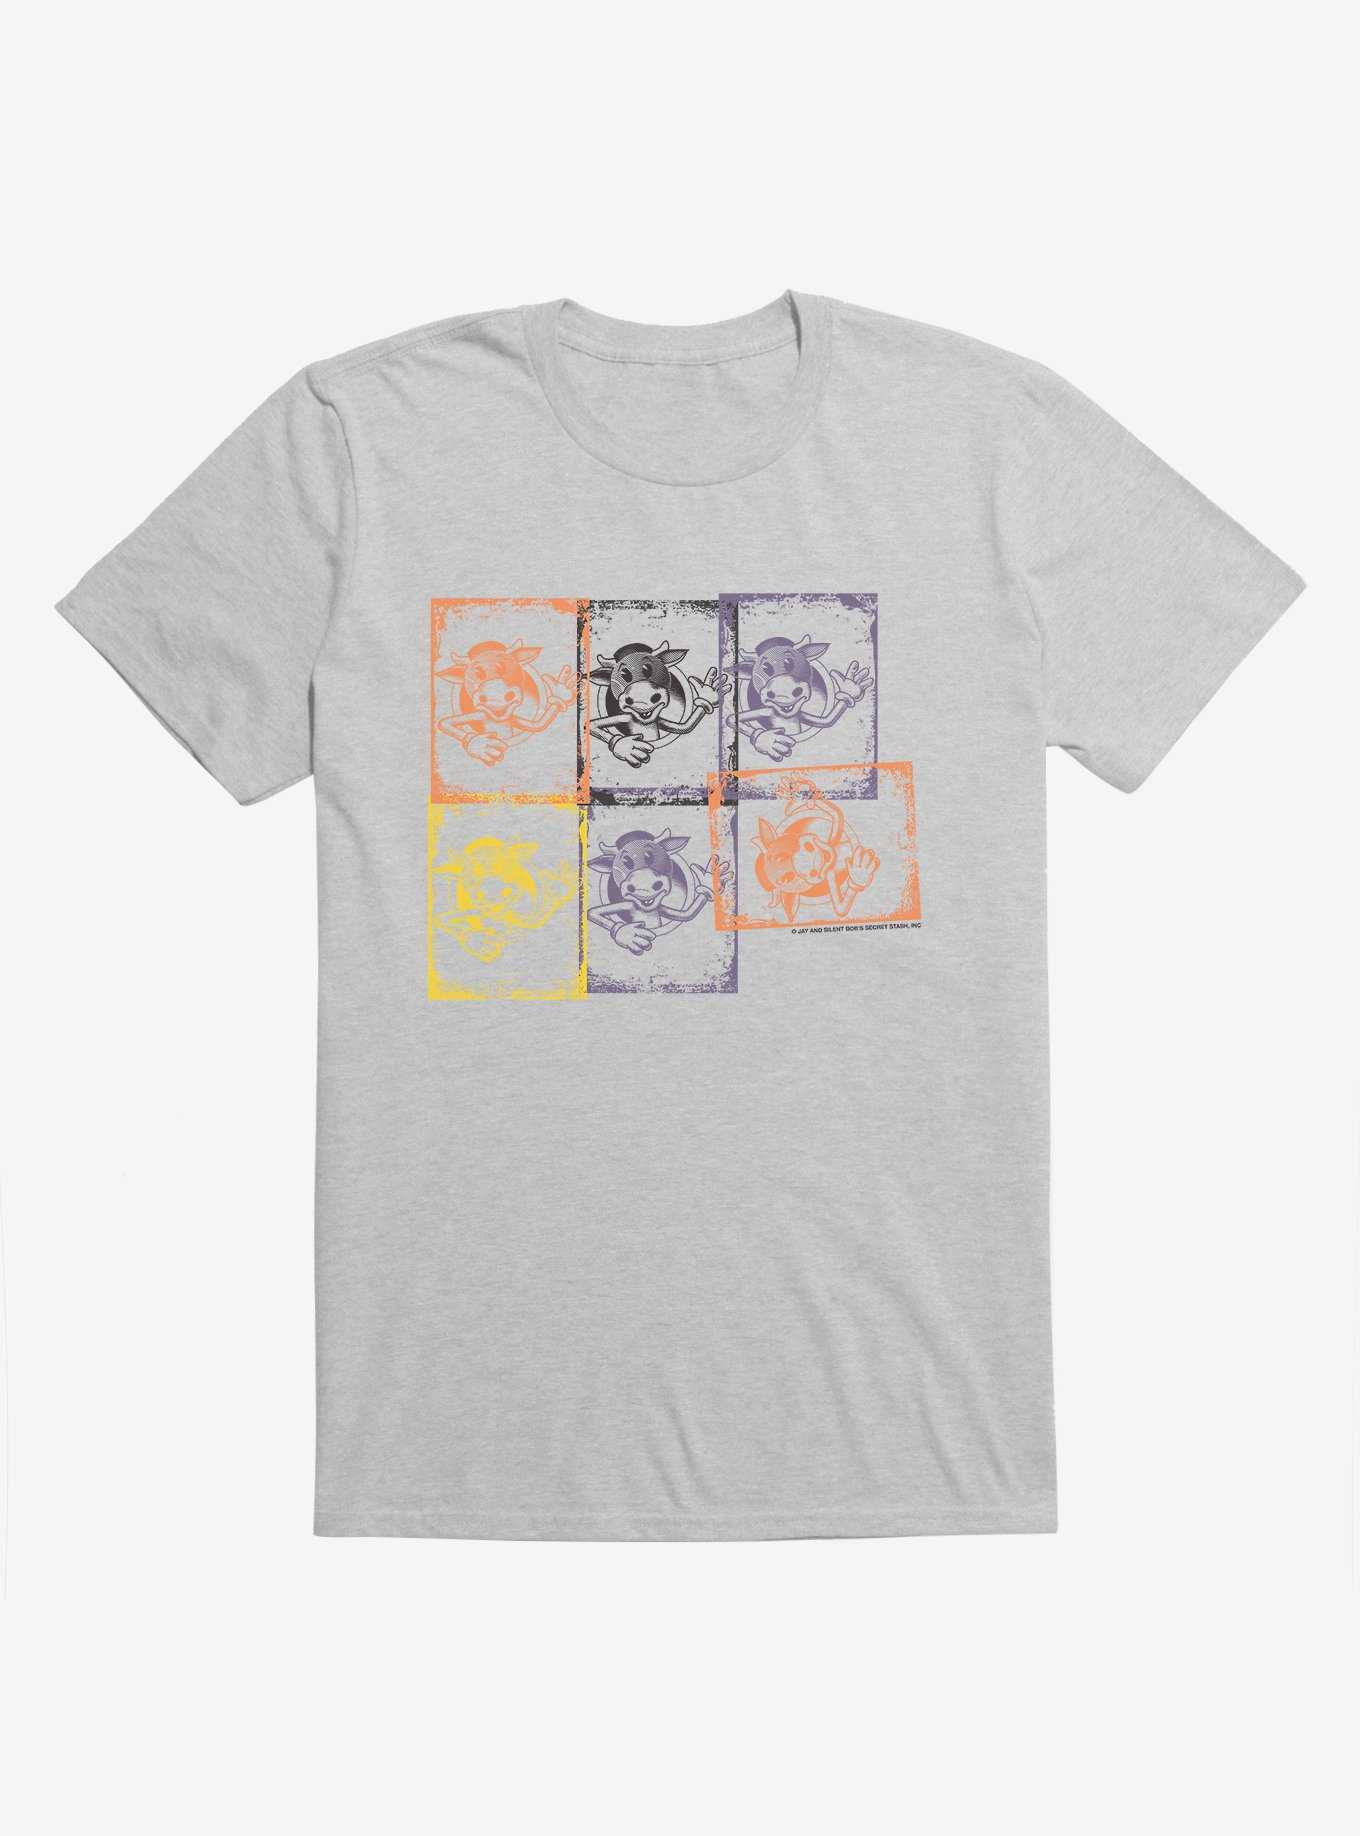 Jay And Silent Bob Reboot Mooby Logo Squares T-Shirt, HEATHER GREY, hi-res